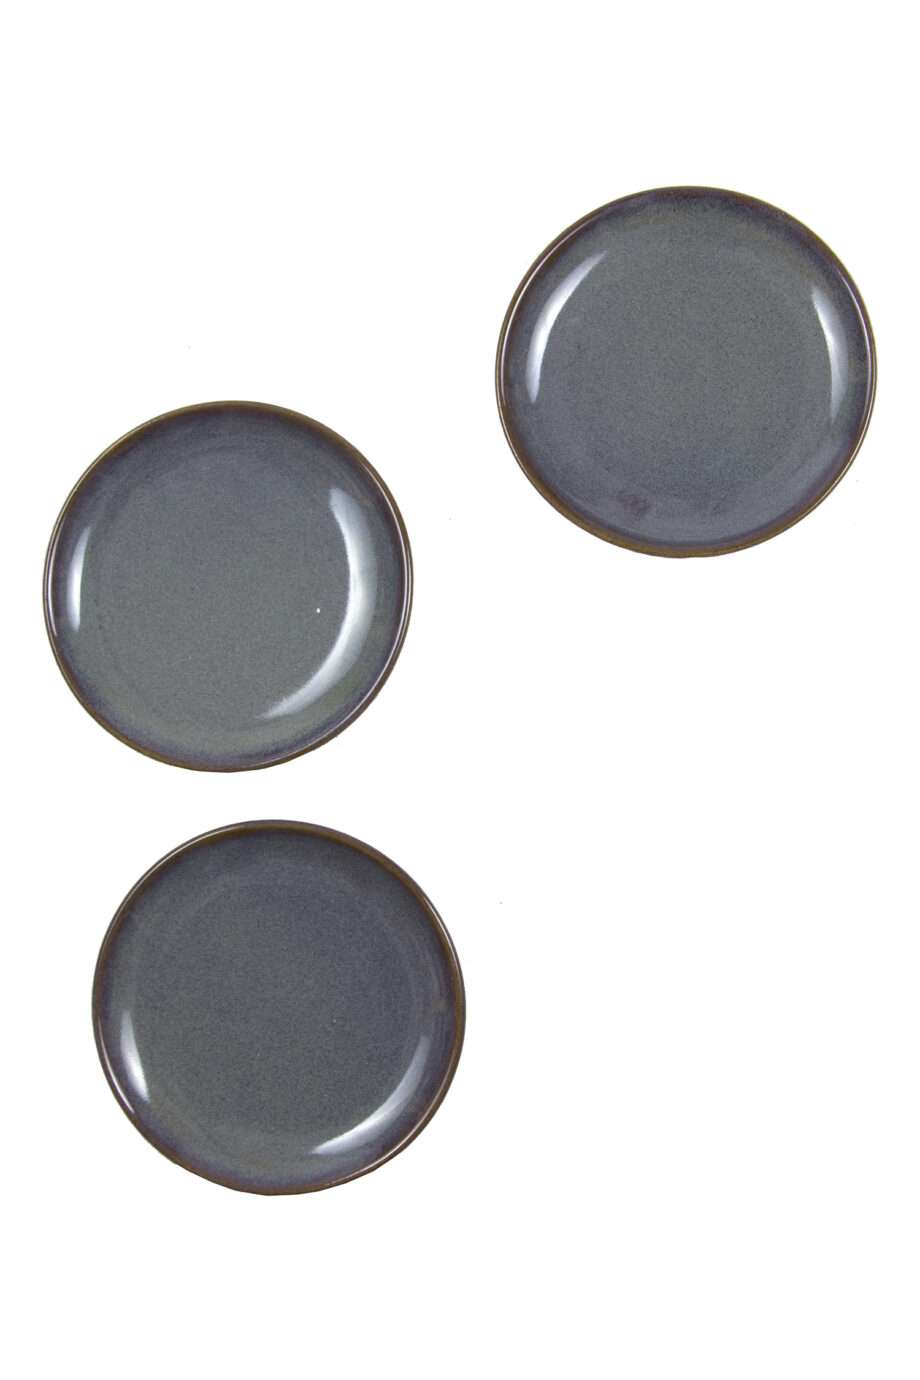 tapas plate celadon glaze ceramic small